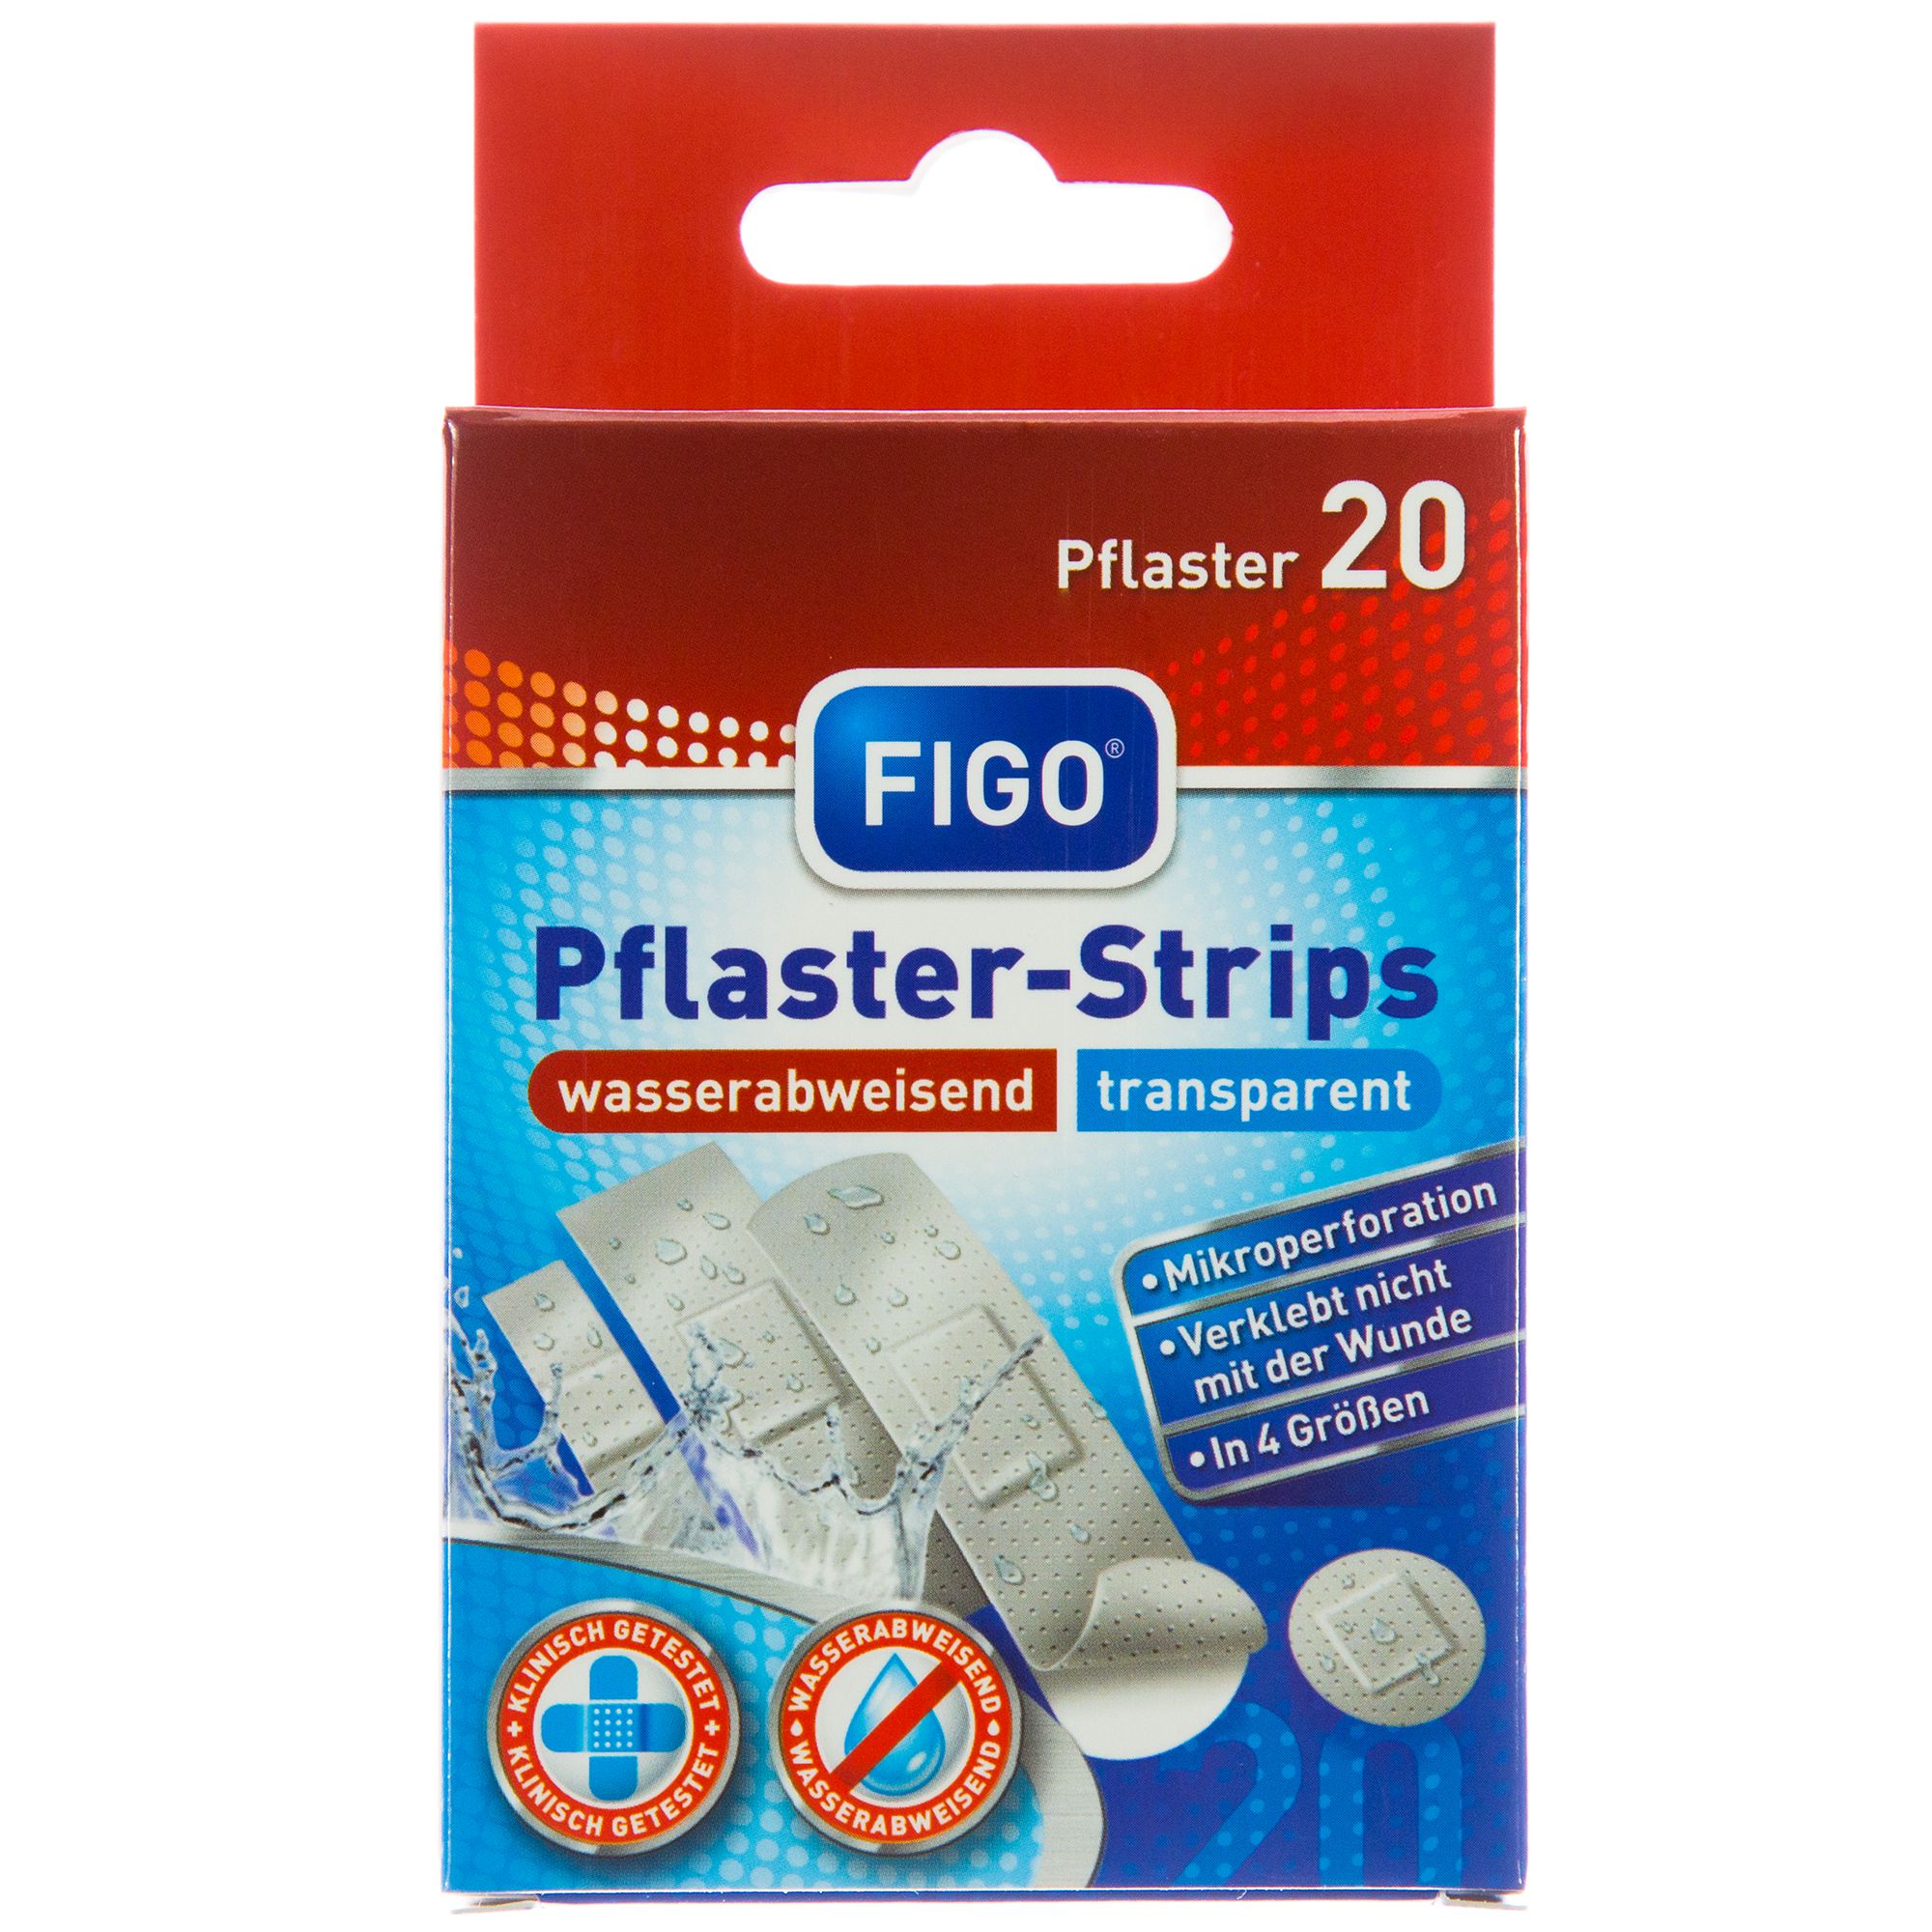 FIGO Pflaster Strips wasserabweisend, transparent - 20er Pflaster-Strips 10003 fron